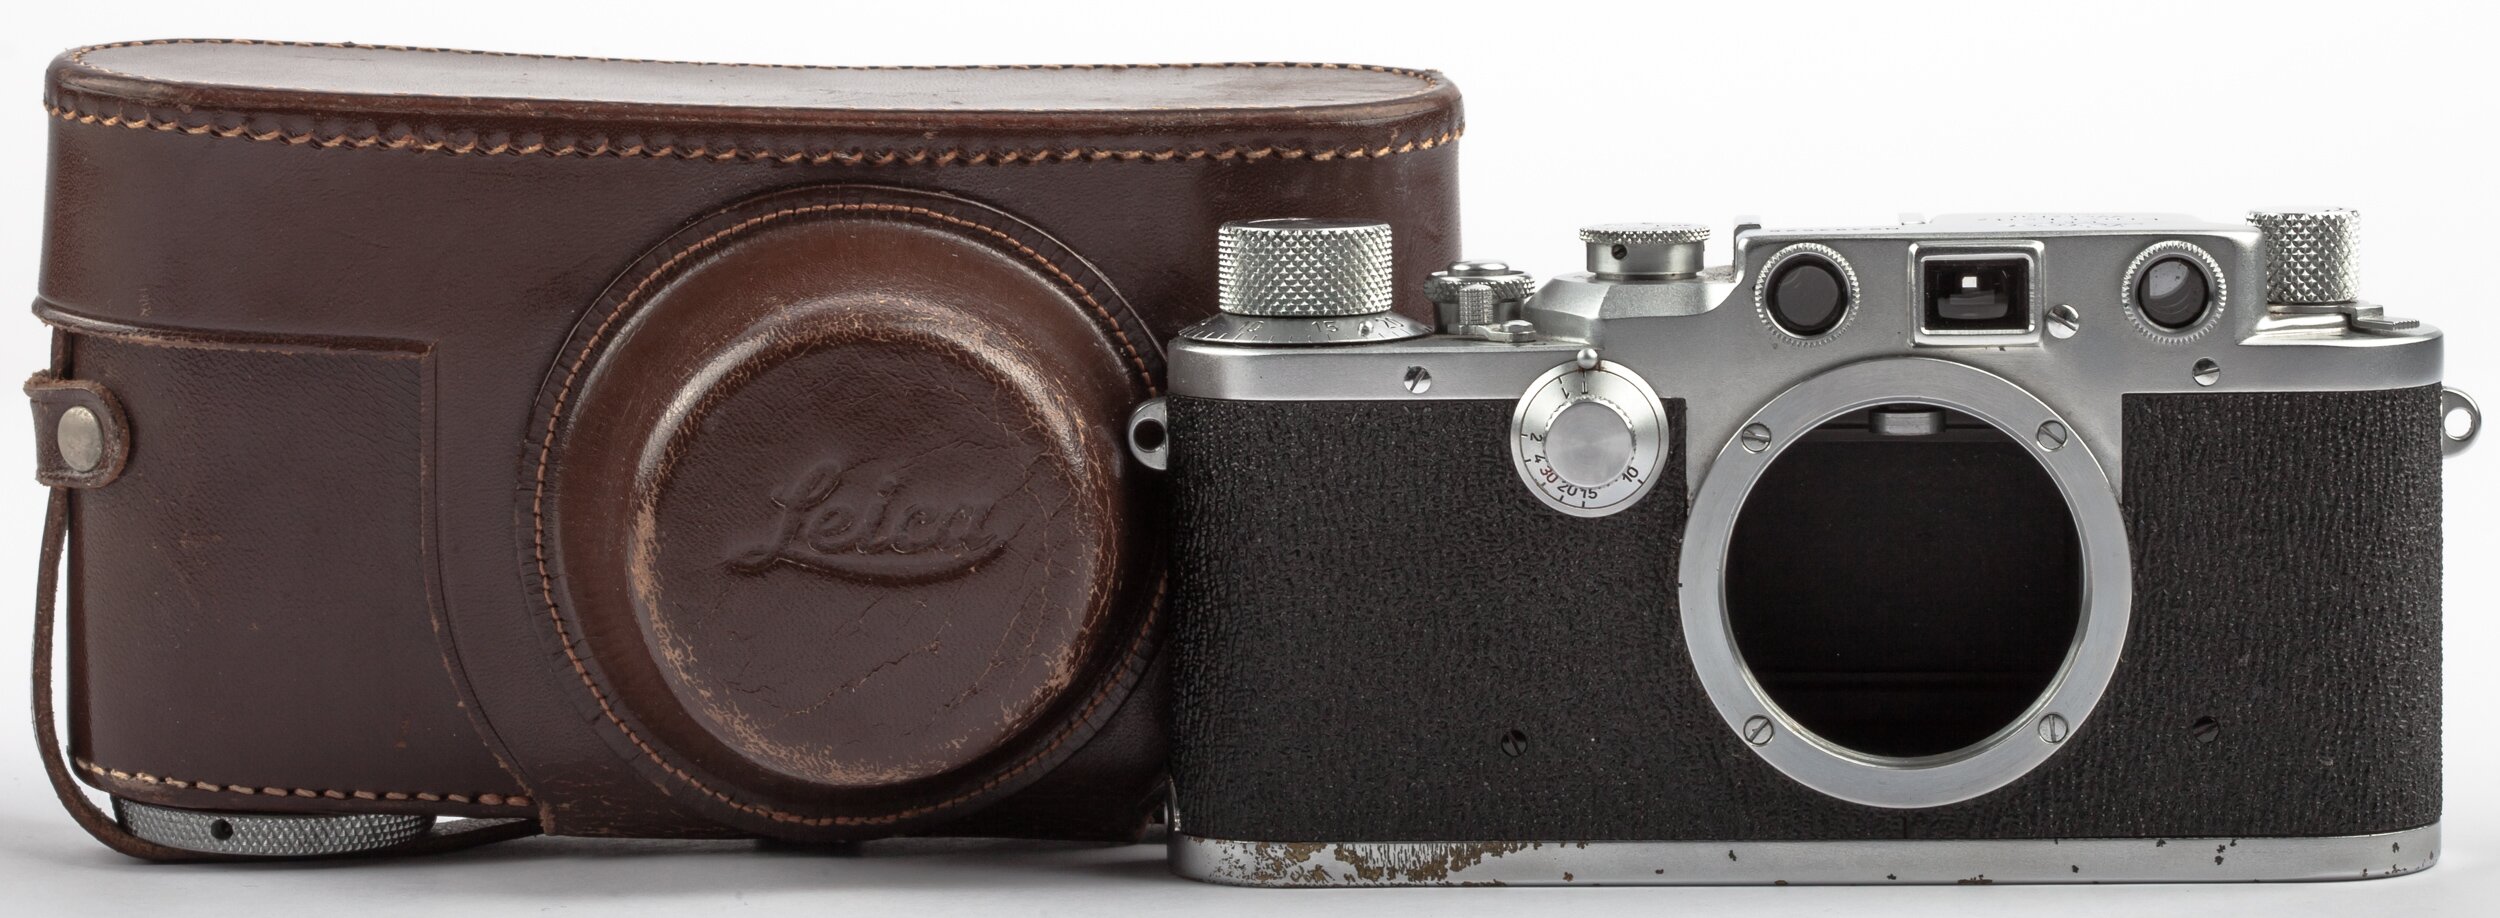 Leitz Leica IIIc Body Chrome